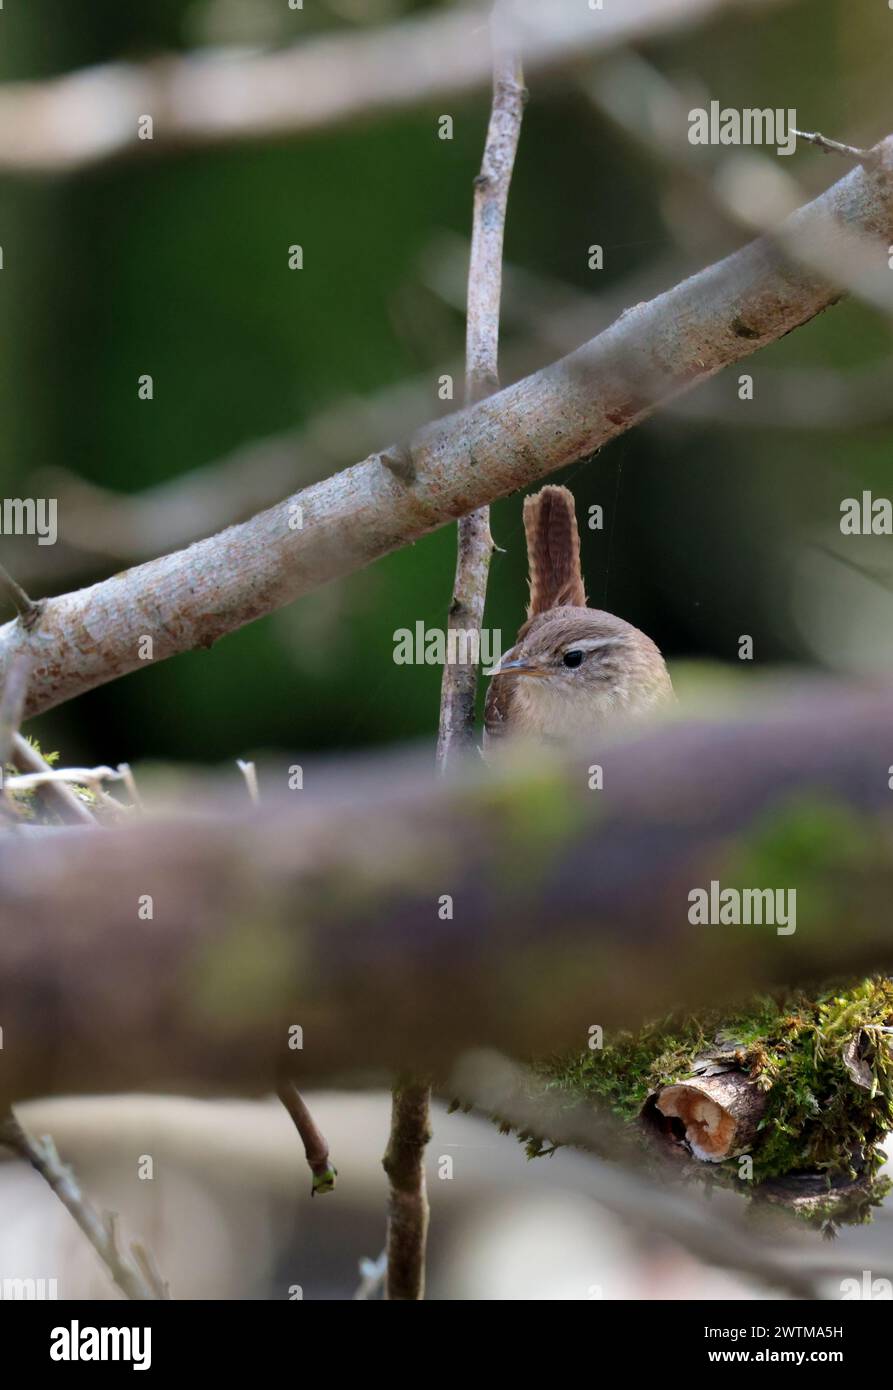 Wren troglodytes x2, petit oiseau brun foncé fine aiguille comme bec courte queue souvent armée fine barrant sur la queue et les ailes ligne pâle au-dessus de l'oeil buff ci-dessous Banque D'Images